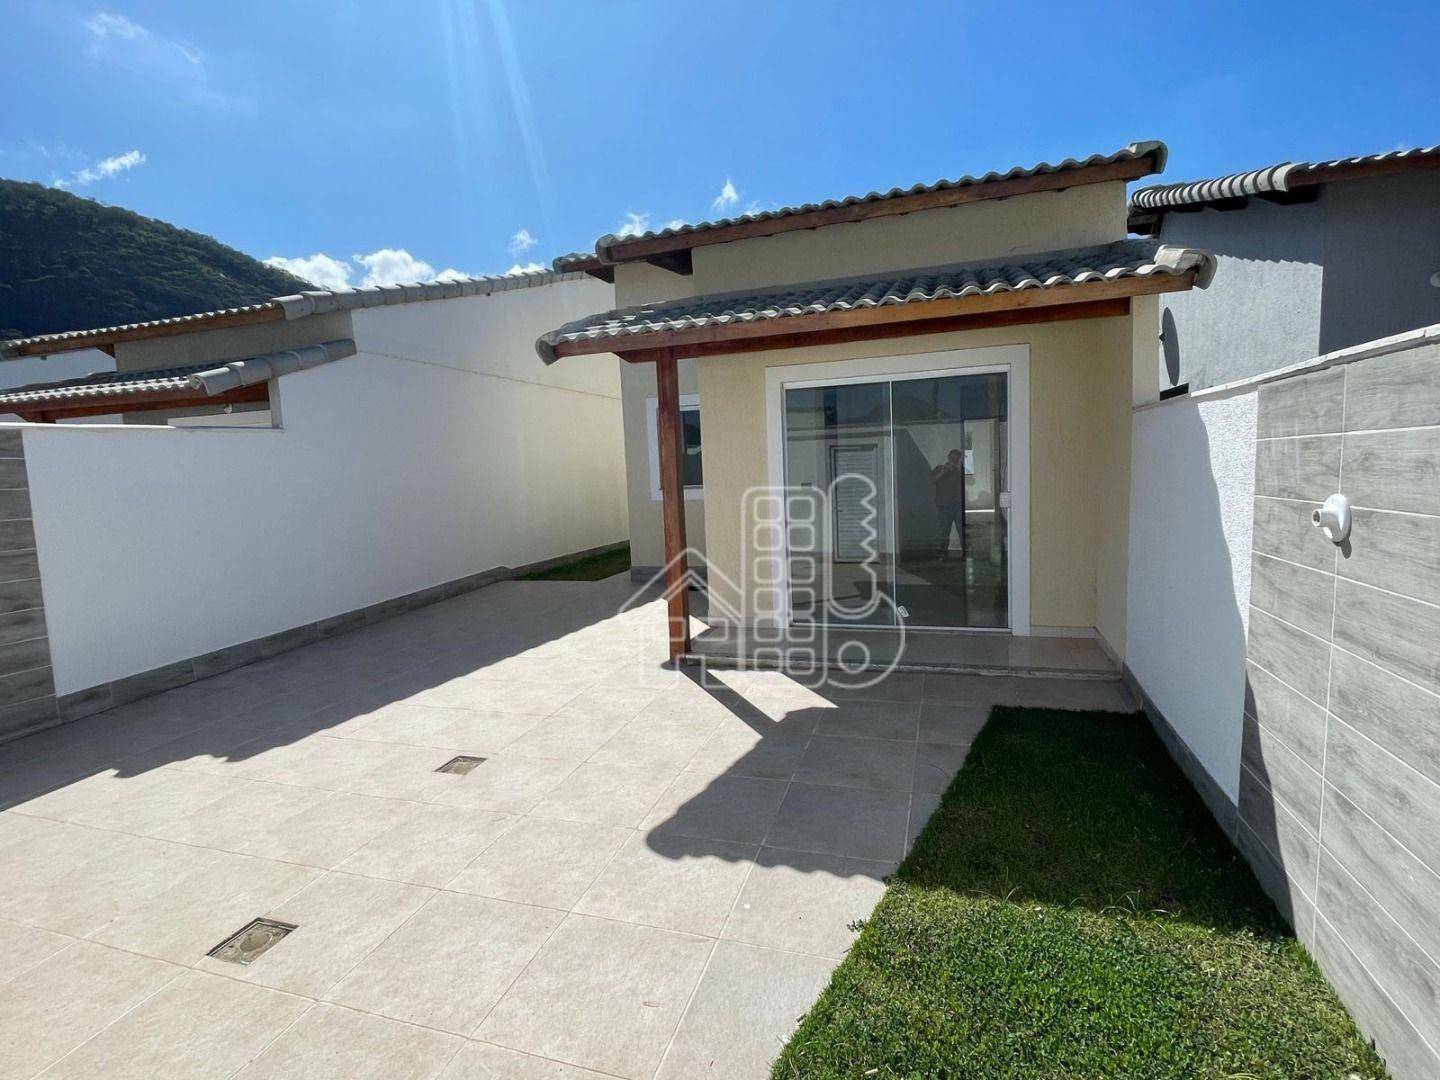 Casa com 2 dormitórios à venda, 78 m² por R$ 410.000,01 - Barroco (Itaipuaçu) - Maricá/RJ